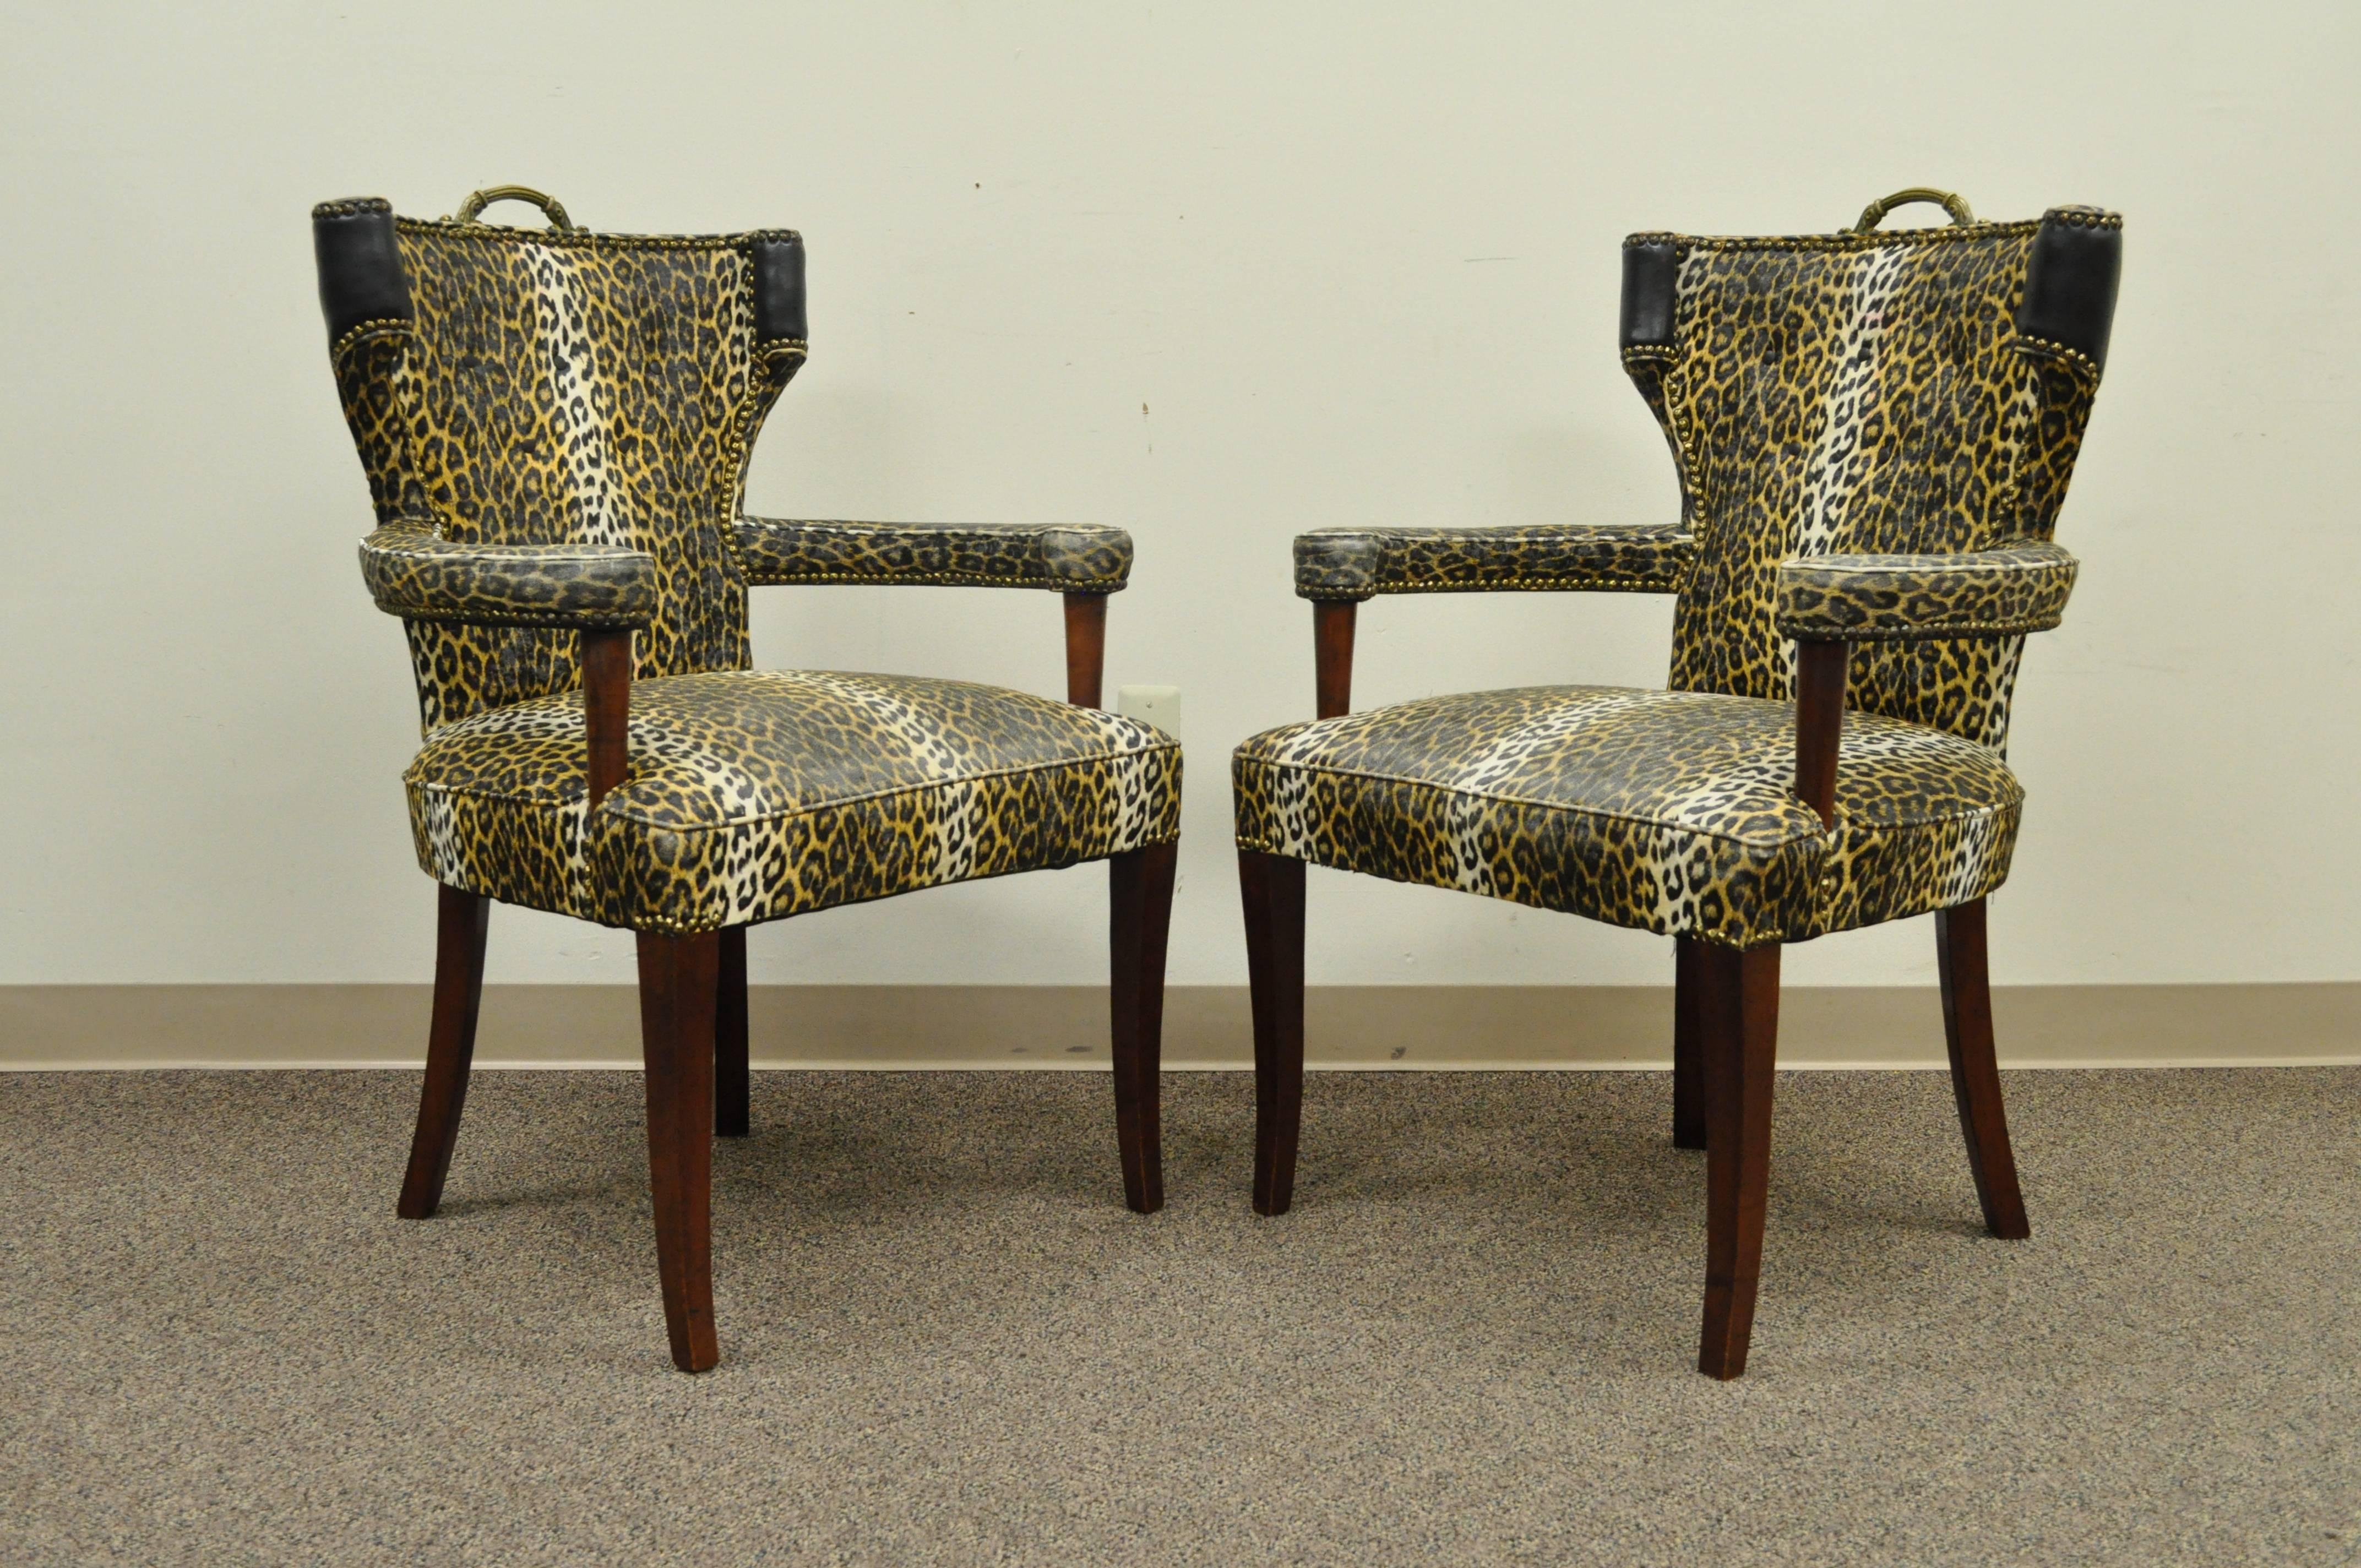 Ein Paar gebogene Sessel mit geparden- oder leopardenbedrucktem Vinyl aus den 1950er Jahren, die Dorothy Draper zugeschrieben werden. Der Rahmen ist aus Mahagoniholz, die Griffe aus Messing, die geschwungene Rückenlehne, die Nagelkopfverzierung und